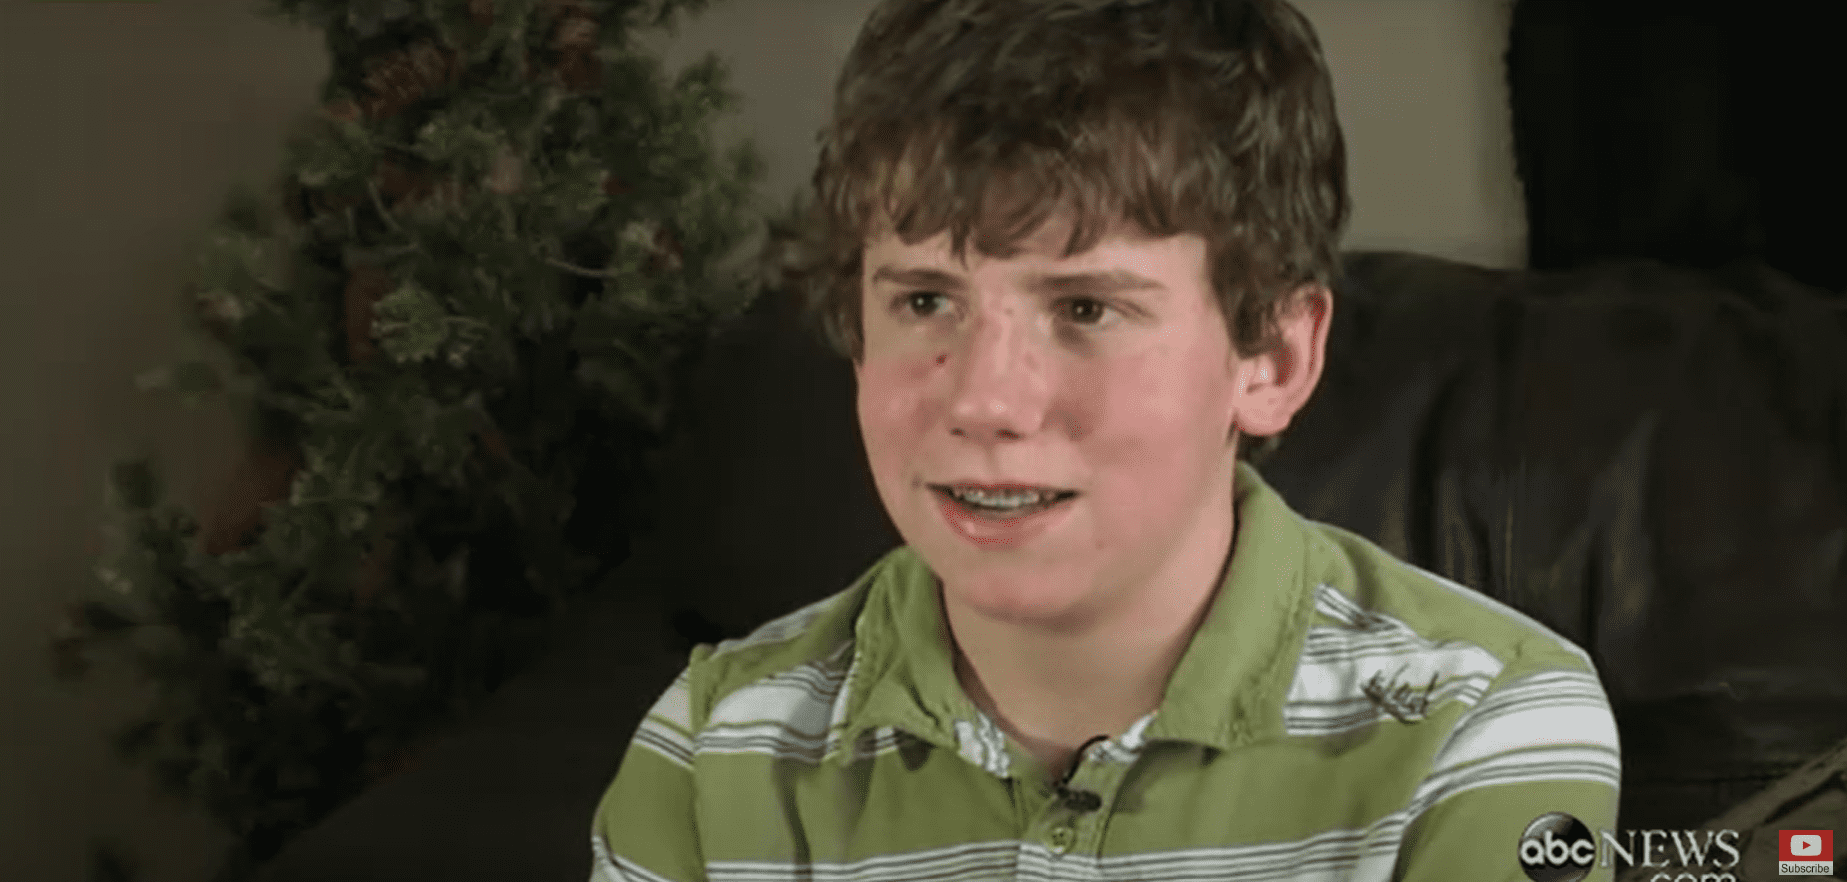 Der 15-jährige AJ Spader spricht mit ABC News, nachdem er seine jüngere Schwester zu seinem Schulball eingeladen hat. | Quelle: Youtube.com/ABC News